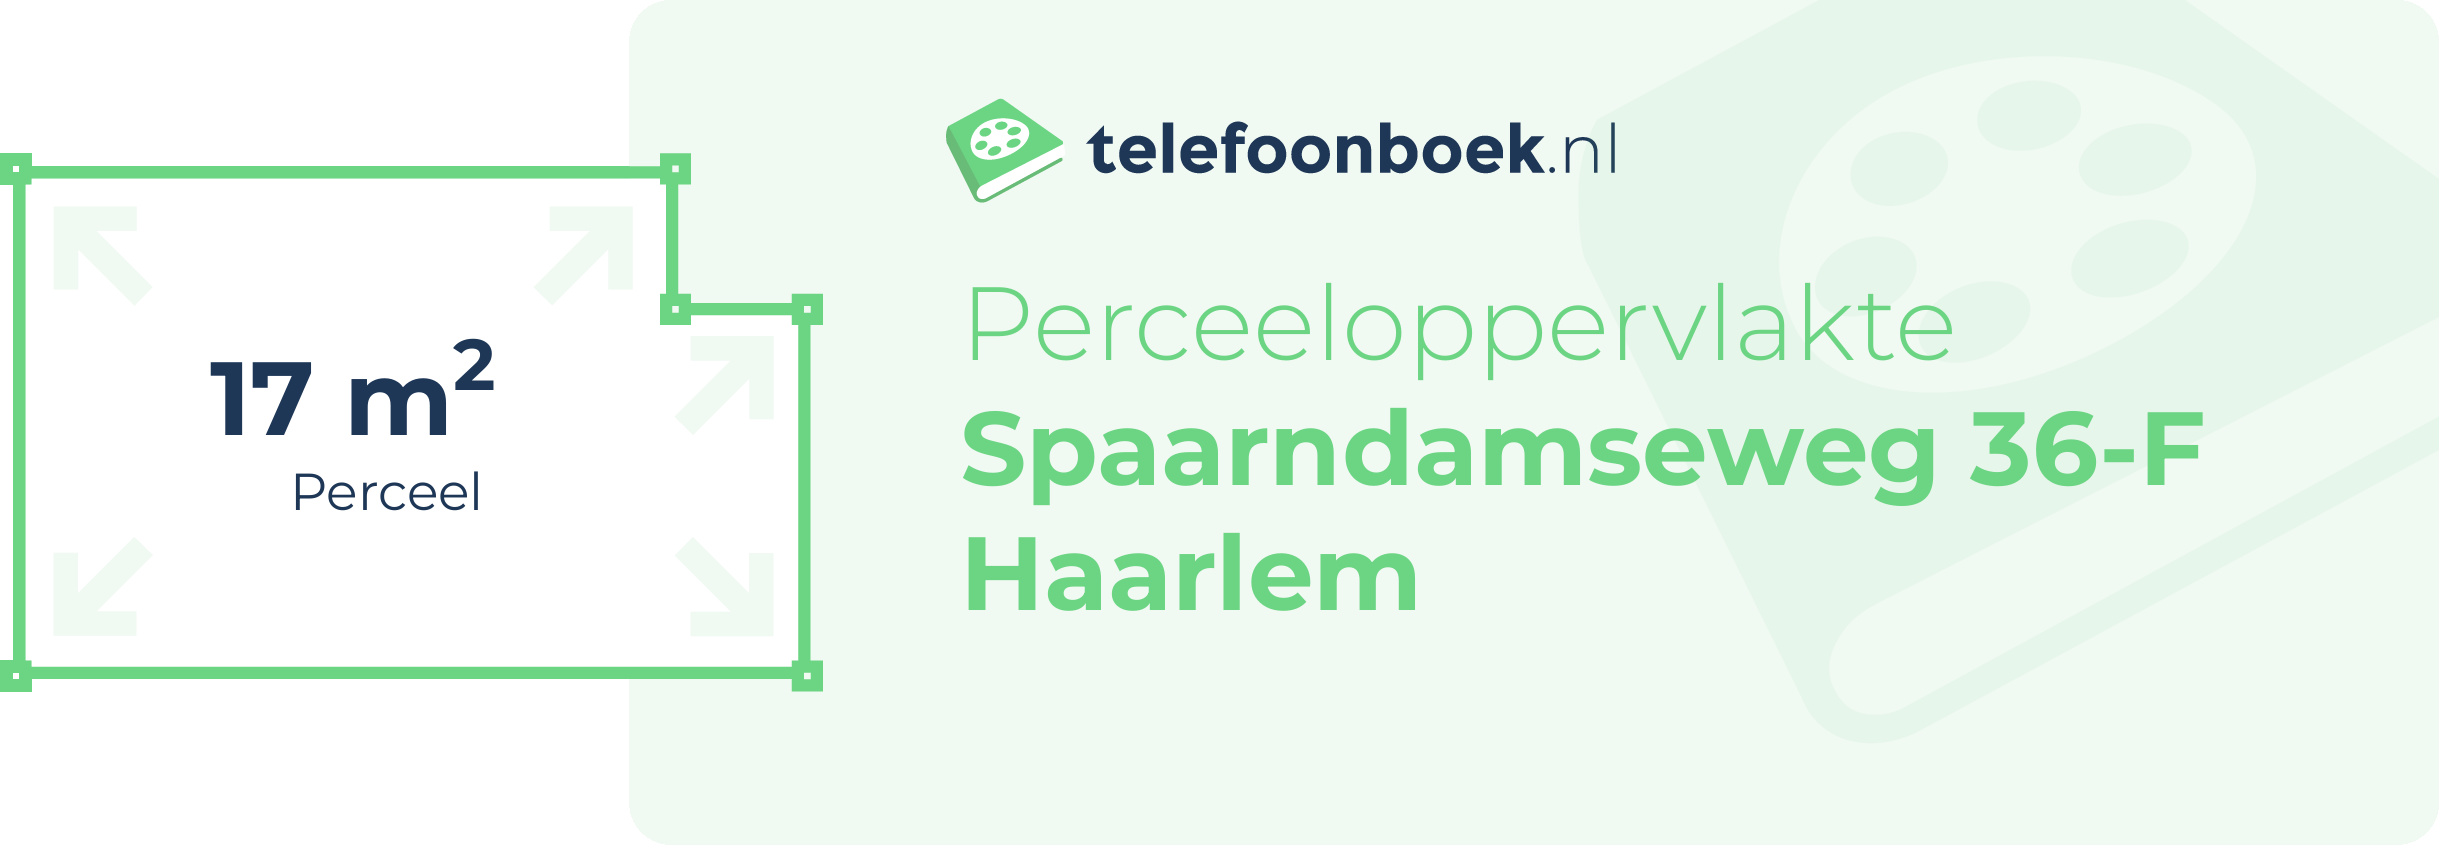 Perceeloppervlakte Spaarndamseweg 36-F Haarlem